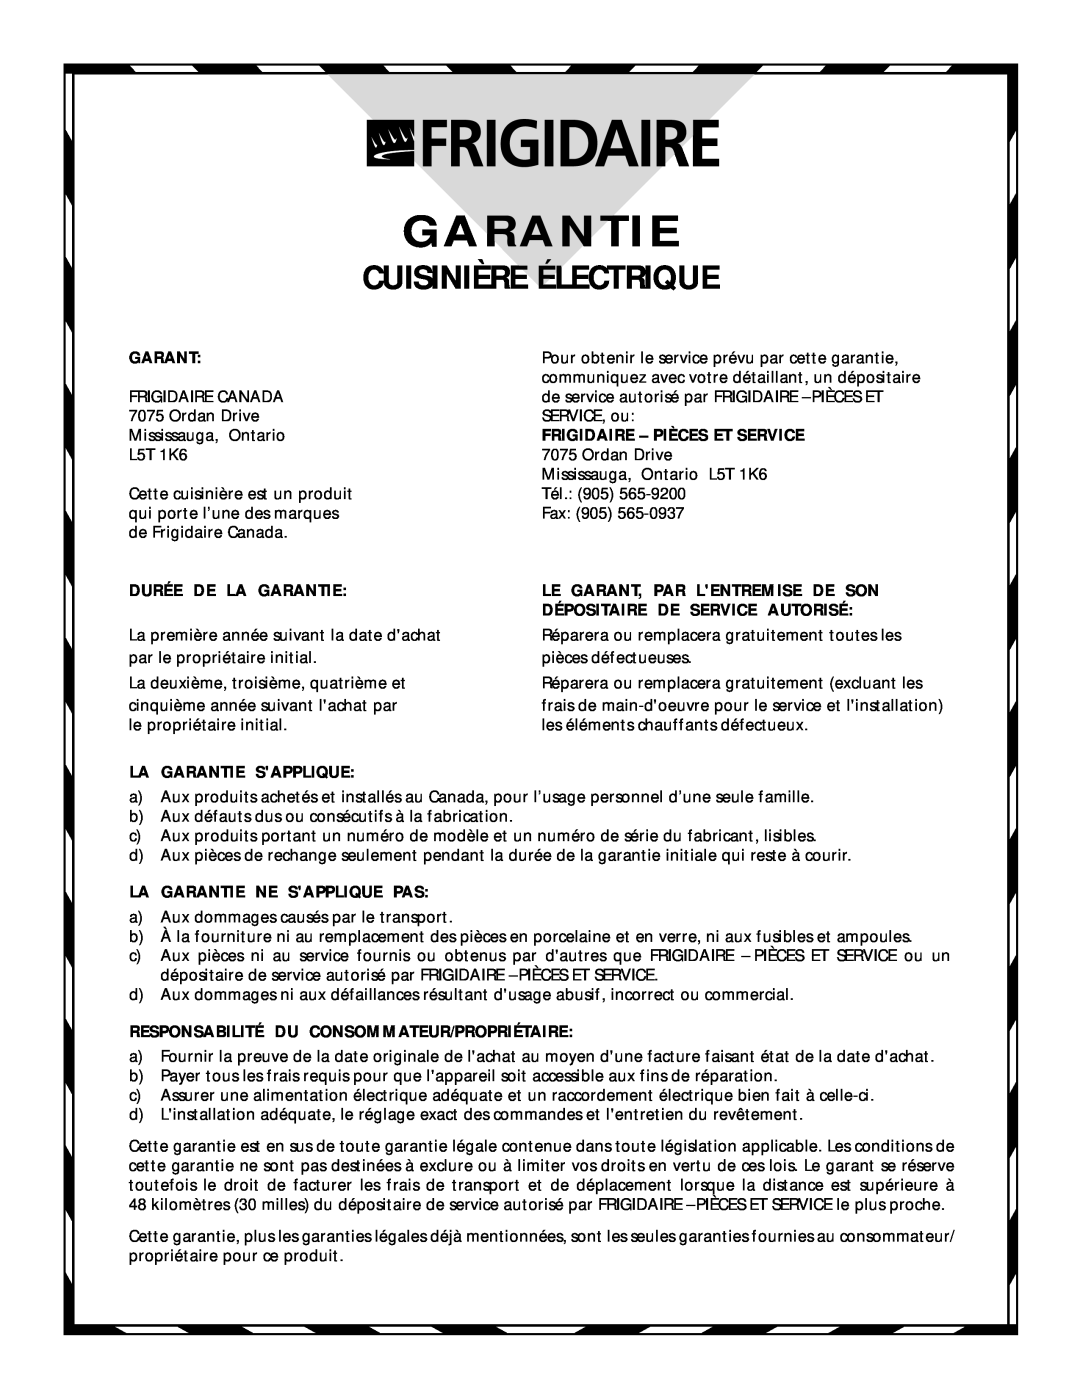 Frigidaire 318200404 manual Cuisinière Électrique, Frigidaire - Pièces Et Service, Durée De La Garantie 